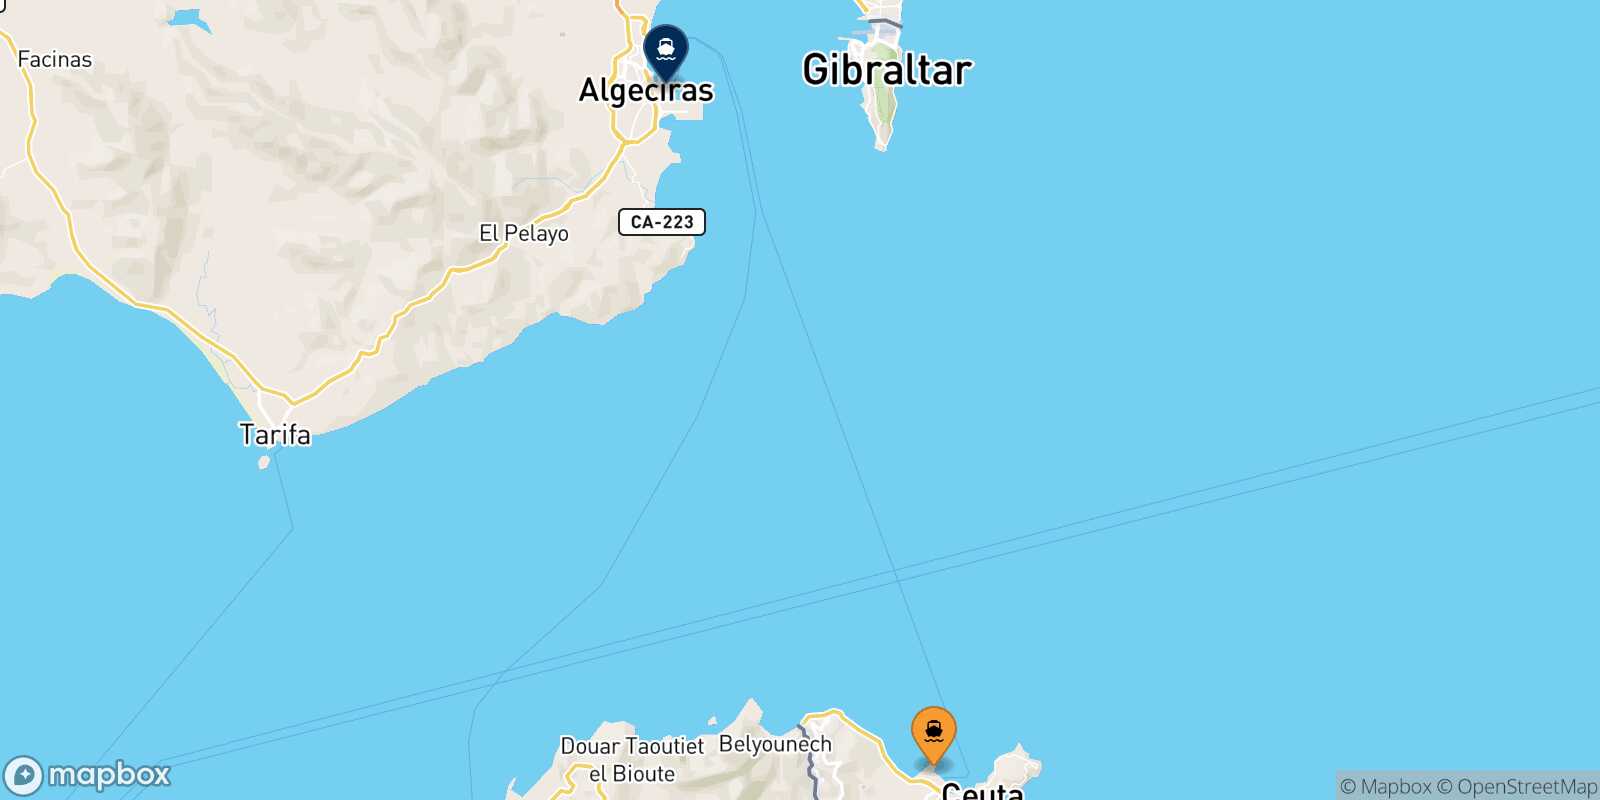 Mappa della rotta Ceuta Algeciras